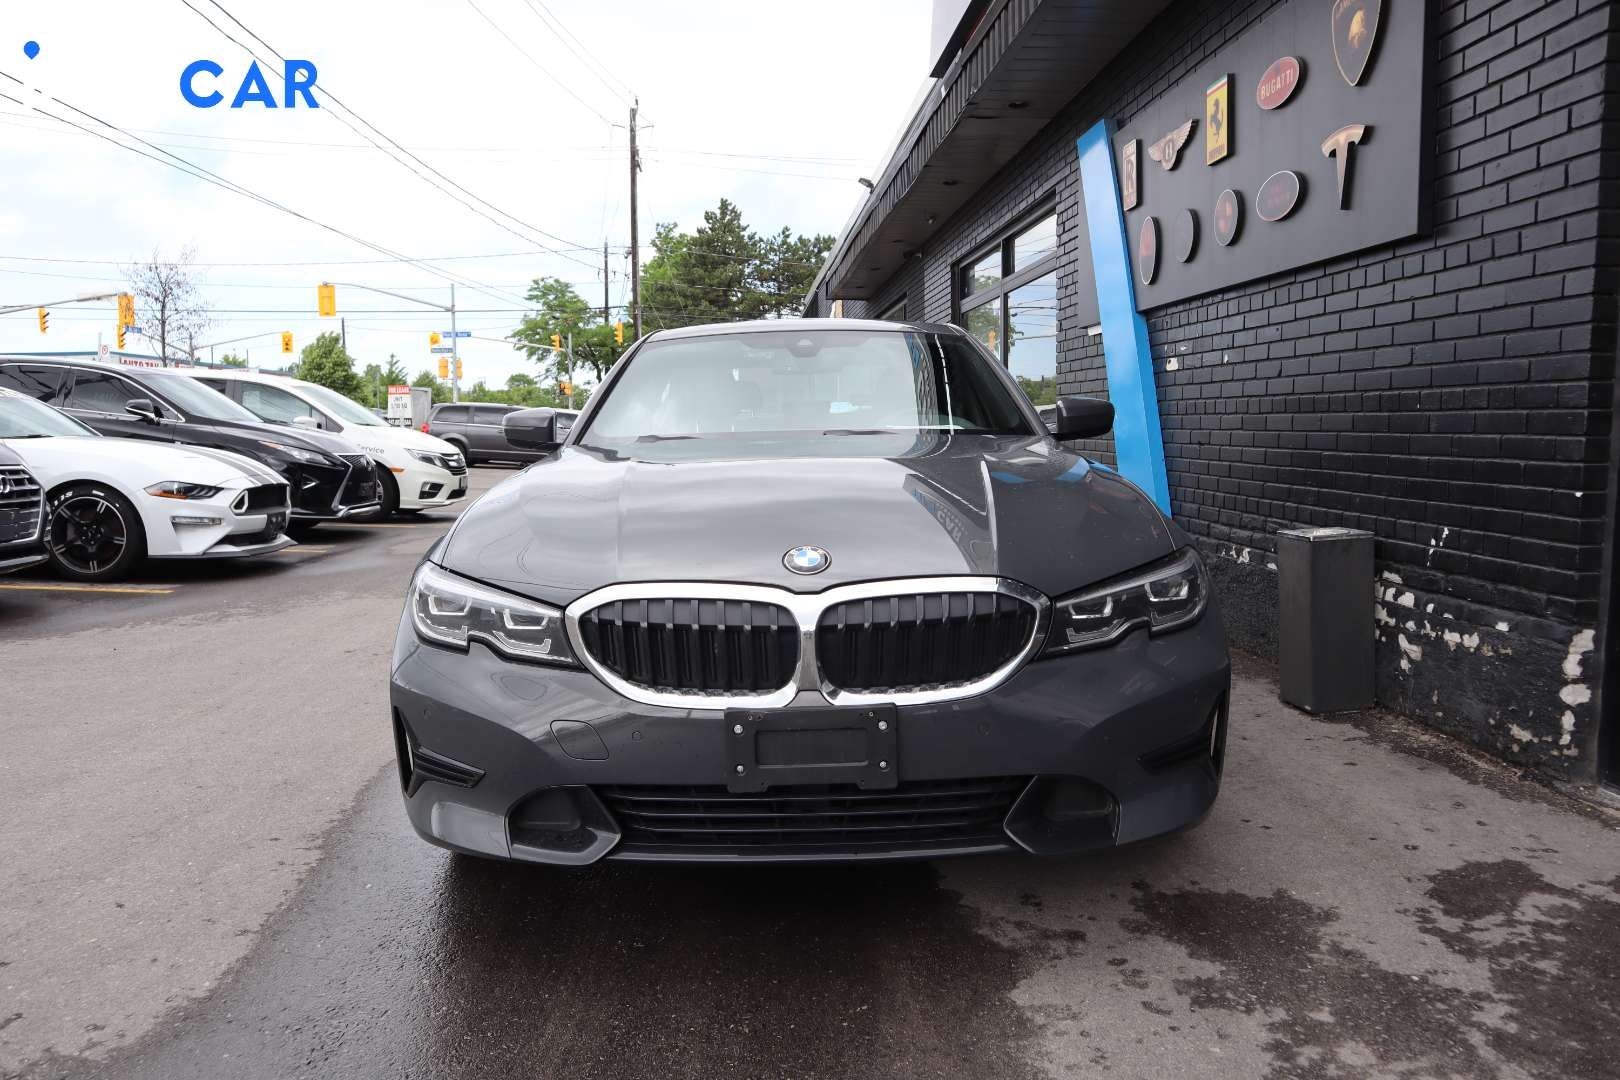 2019 BMW 3-Series 330 - INFOCAR - Toronto Auto Trading Platform